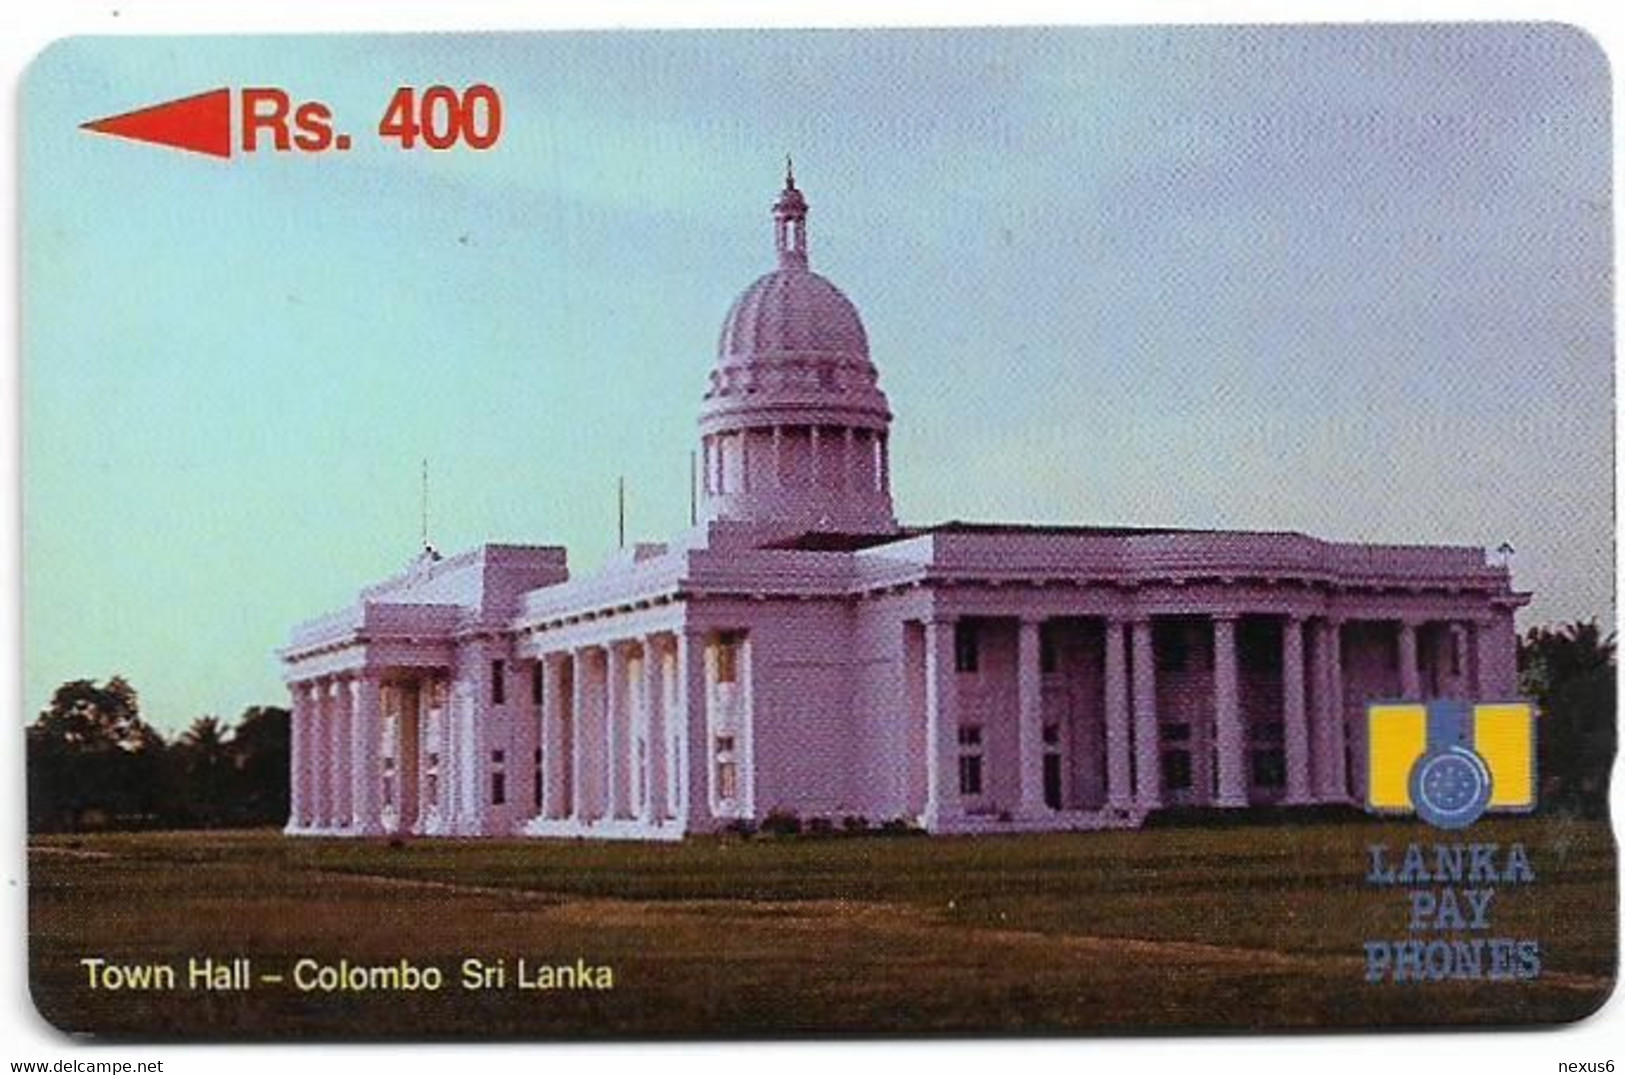 Sri Lanka - Lanka Pay Phones (GPT) - Town Hall, Colombo - 10SRLA - 400Rs, Used - Sri Lanka (Ceylon)